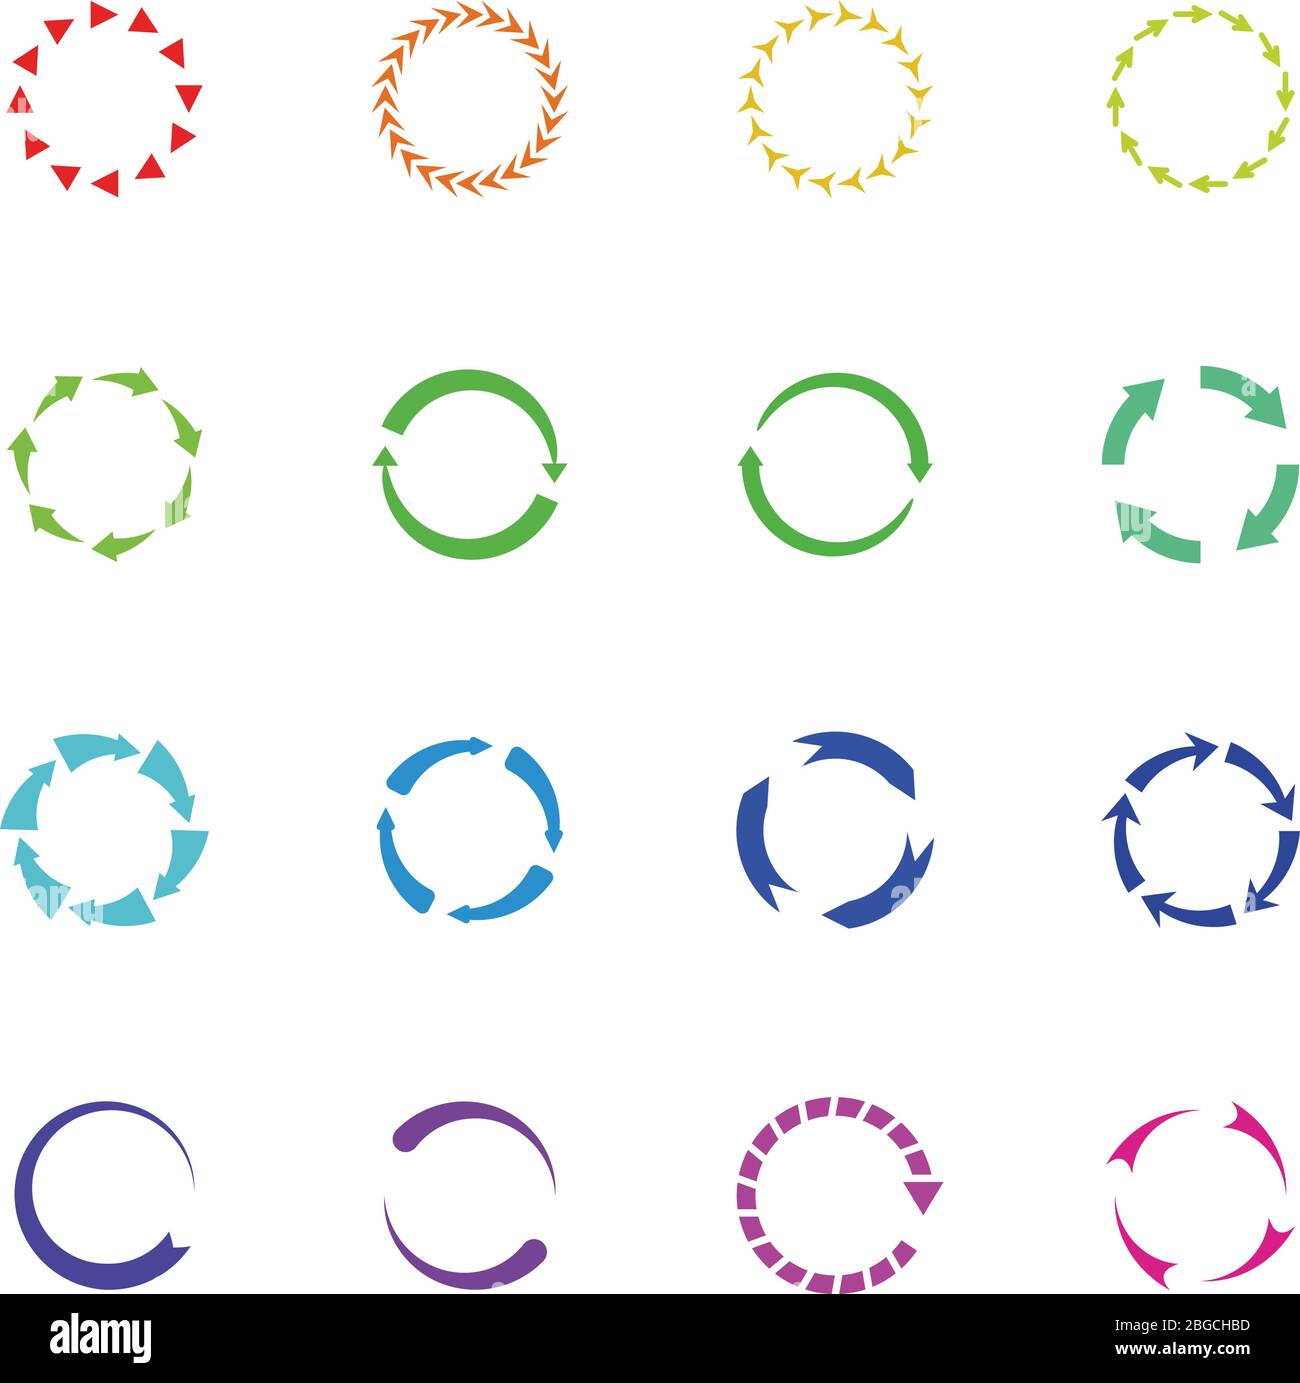 Farbkreis neu laden Pfeile Vektor-Symbole. Runden Pfeilelemente. Abbildung der Schleife mit Pfeil neu laden und aktualisieren Stock Vektor